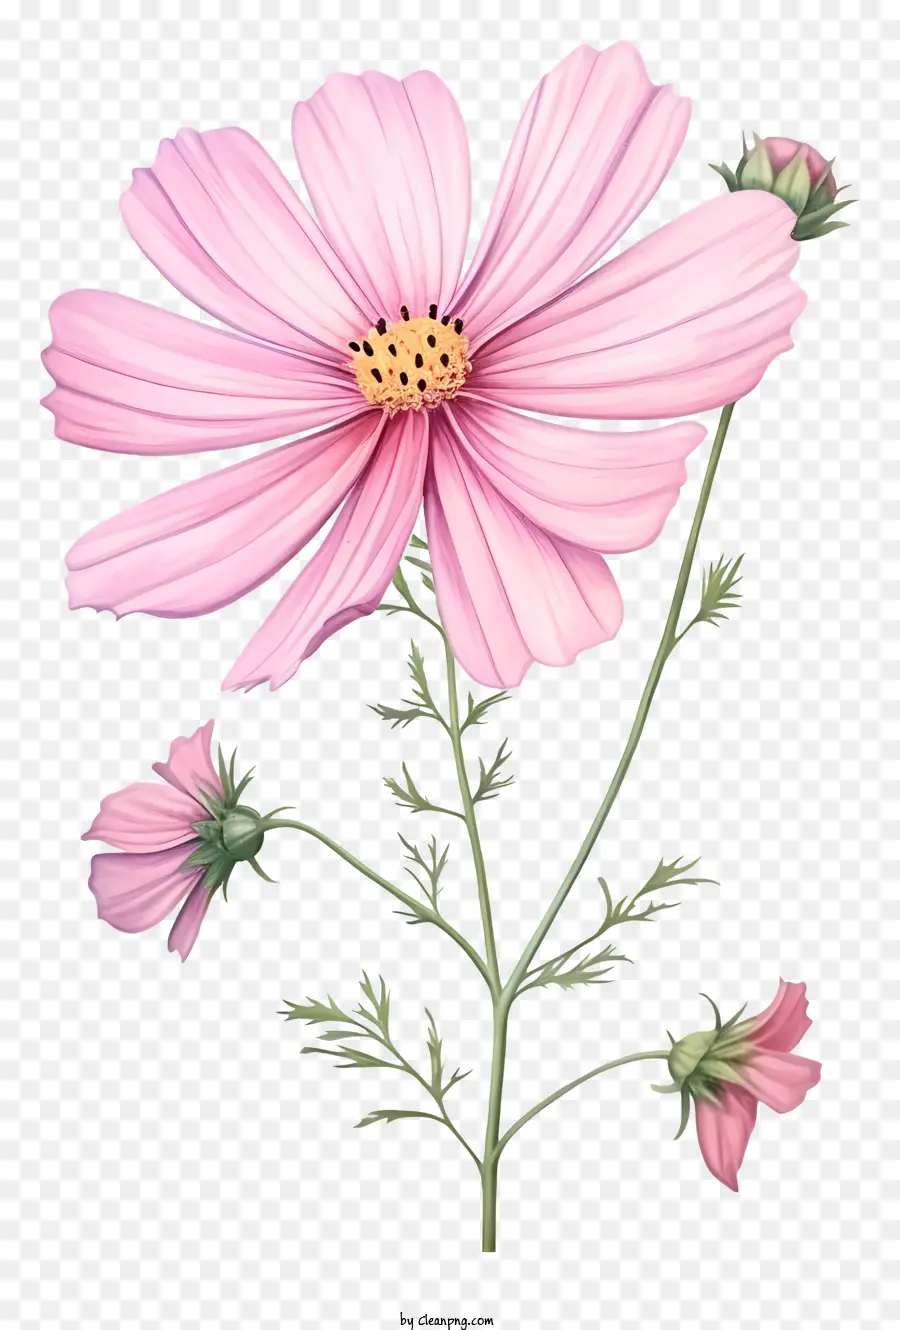 rosa Blume - Realistisches Bild der rosa Blume mit grünen Blättern